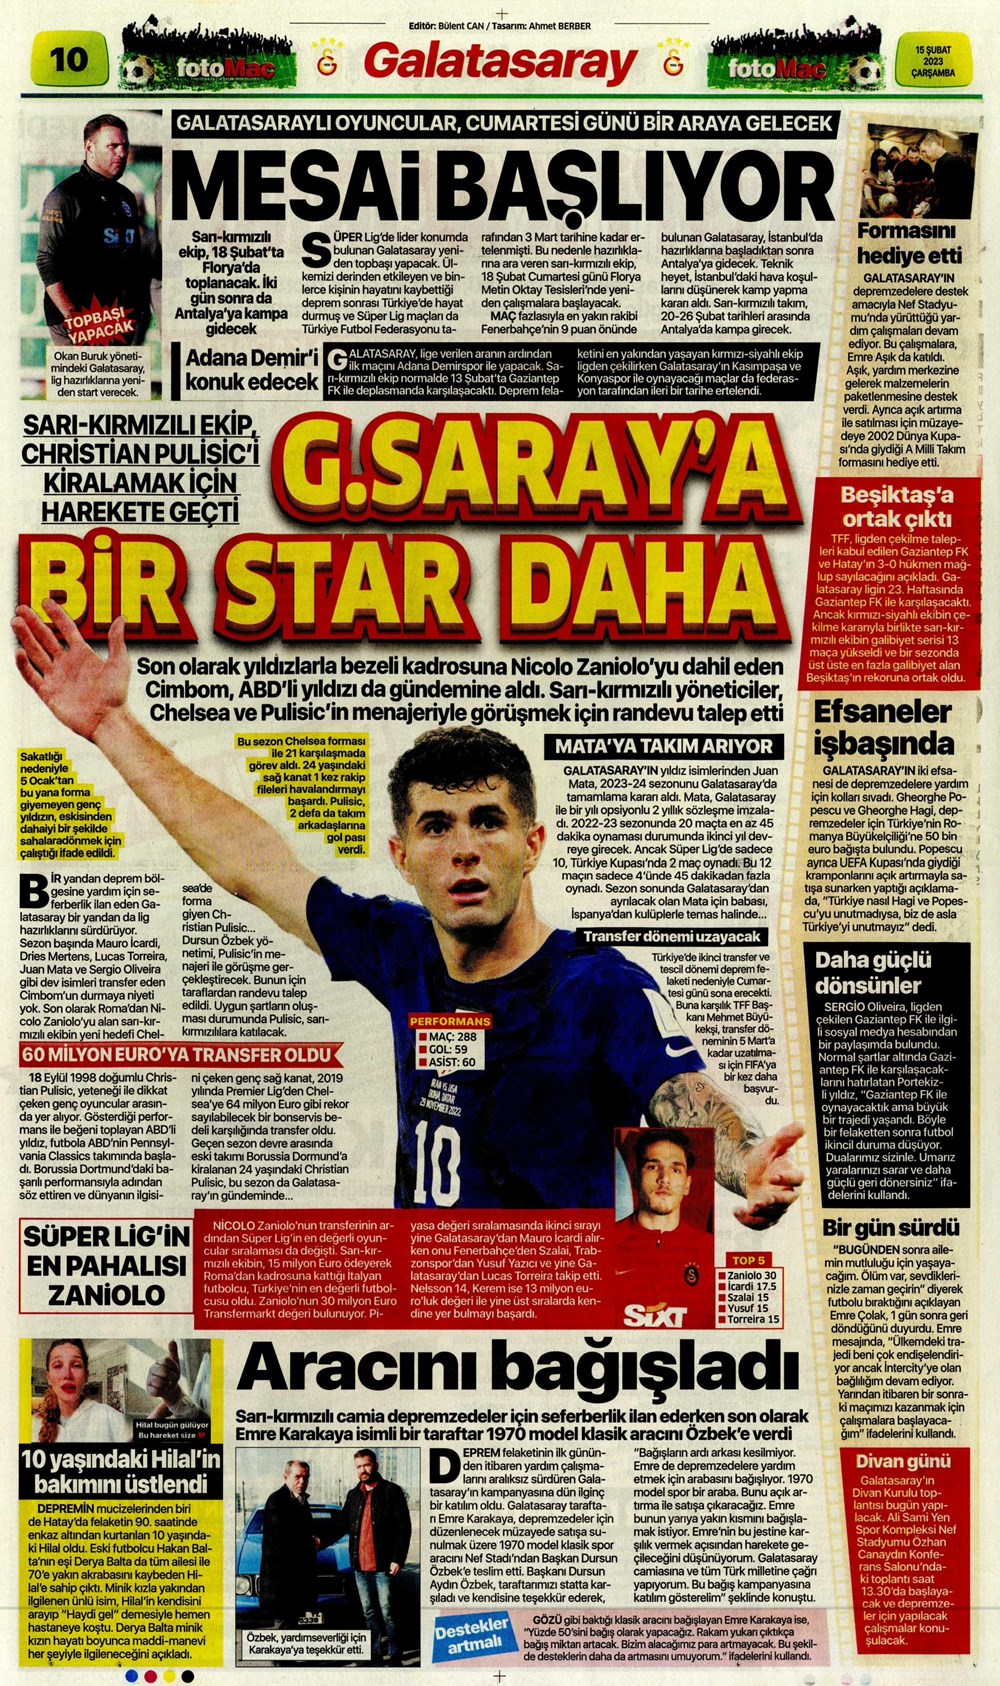 "Chelsea'nin yıldızı Cimbom'a" Sporun Manşetleri  - 7. Foto